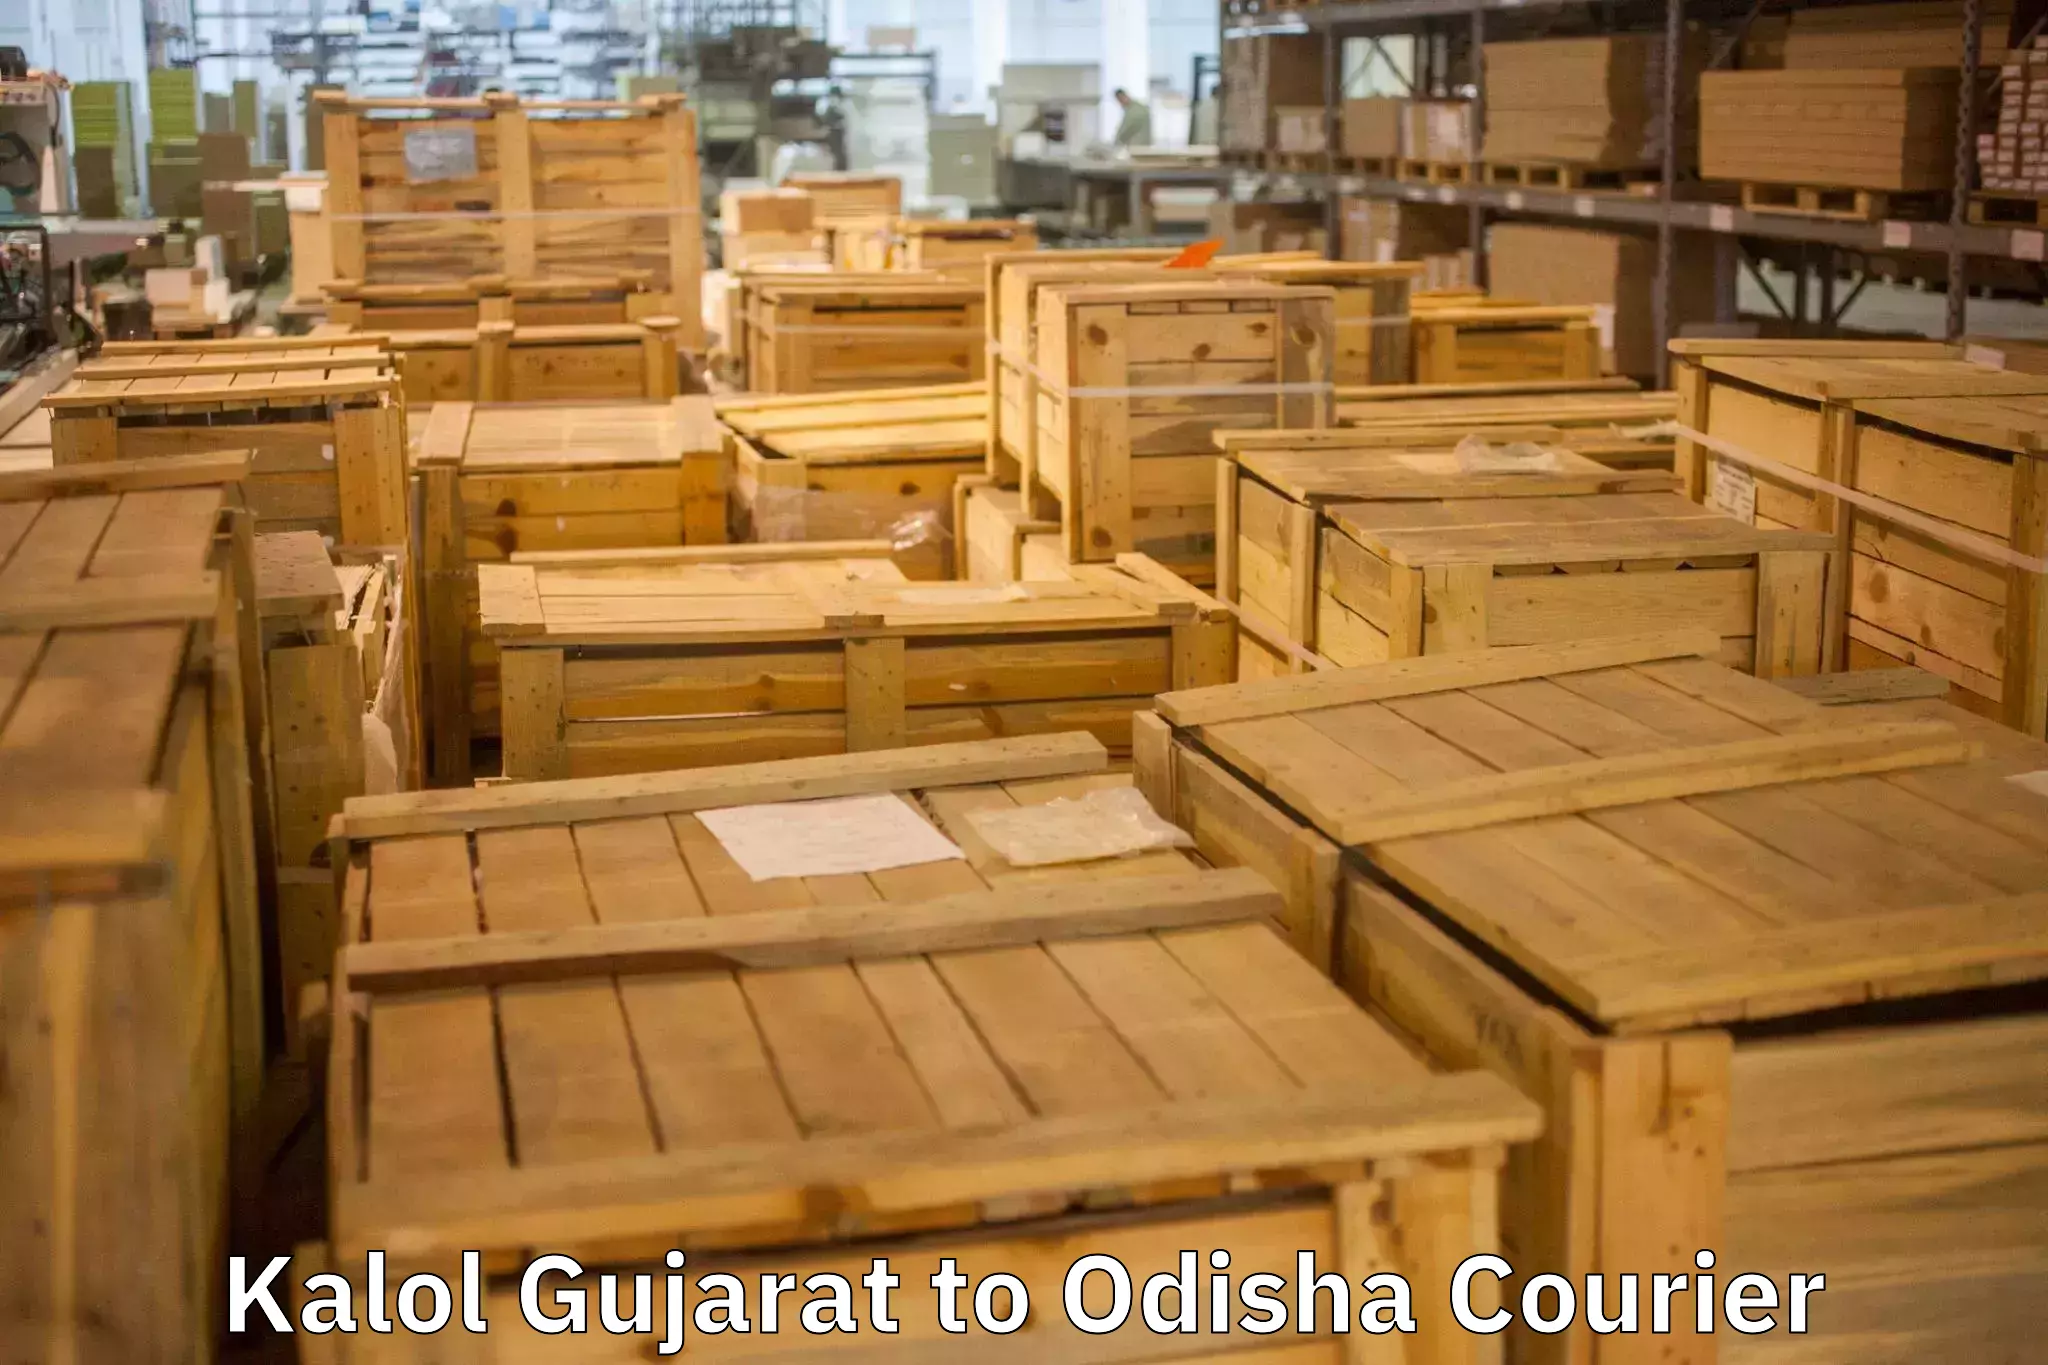 Furniture moving experts Kalol Gujarat to Jharsuguda